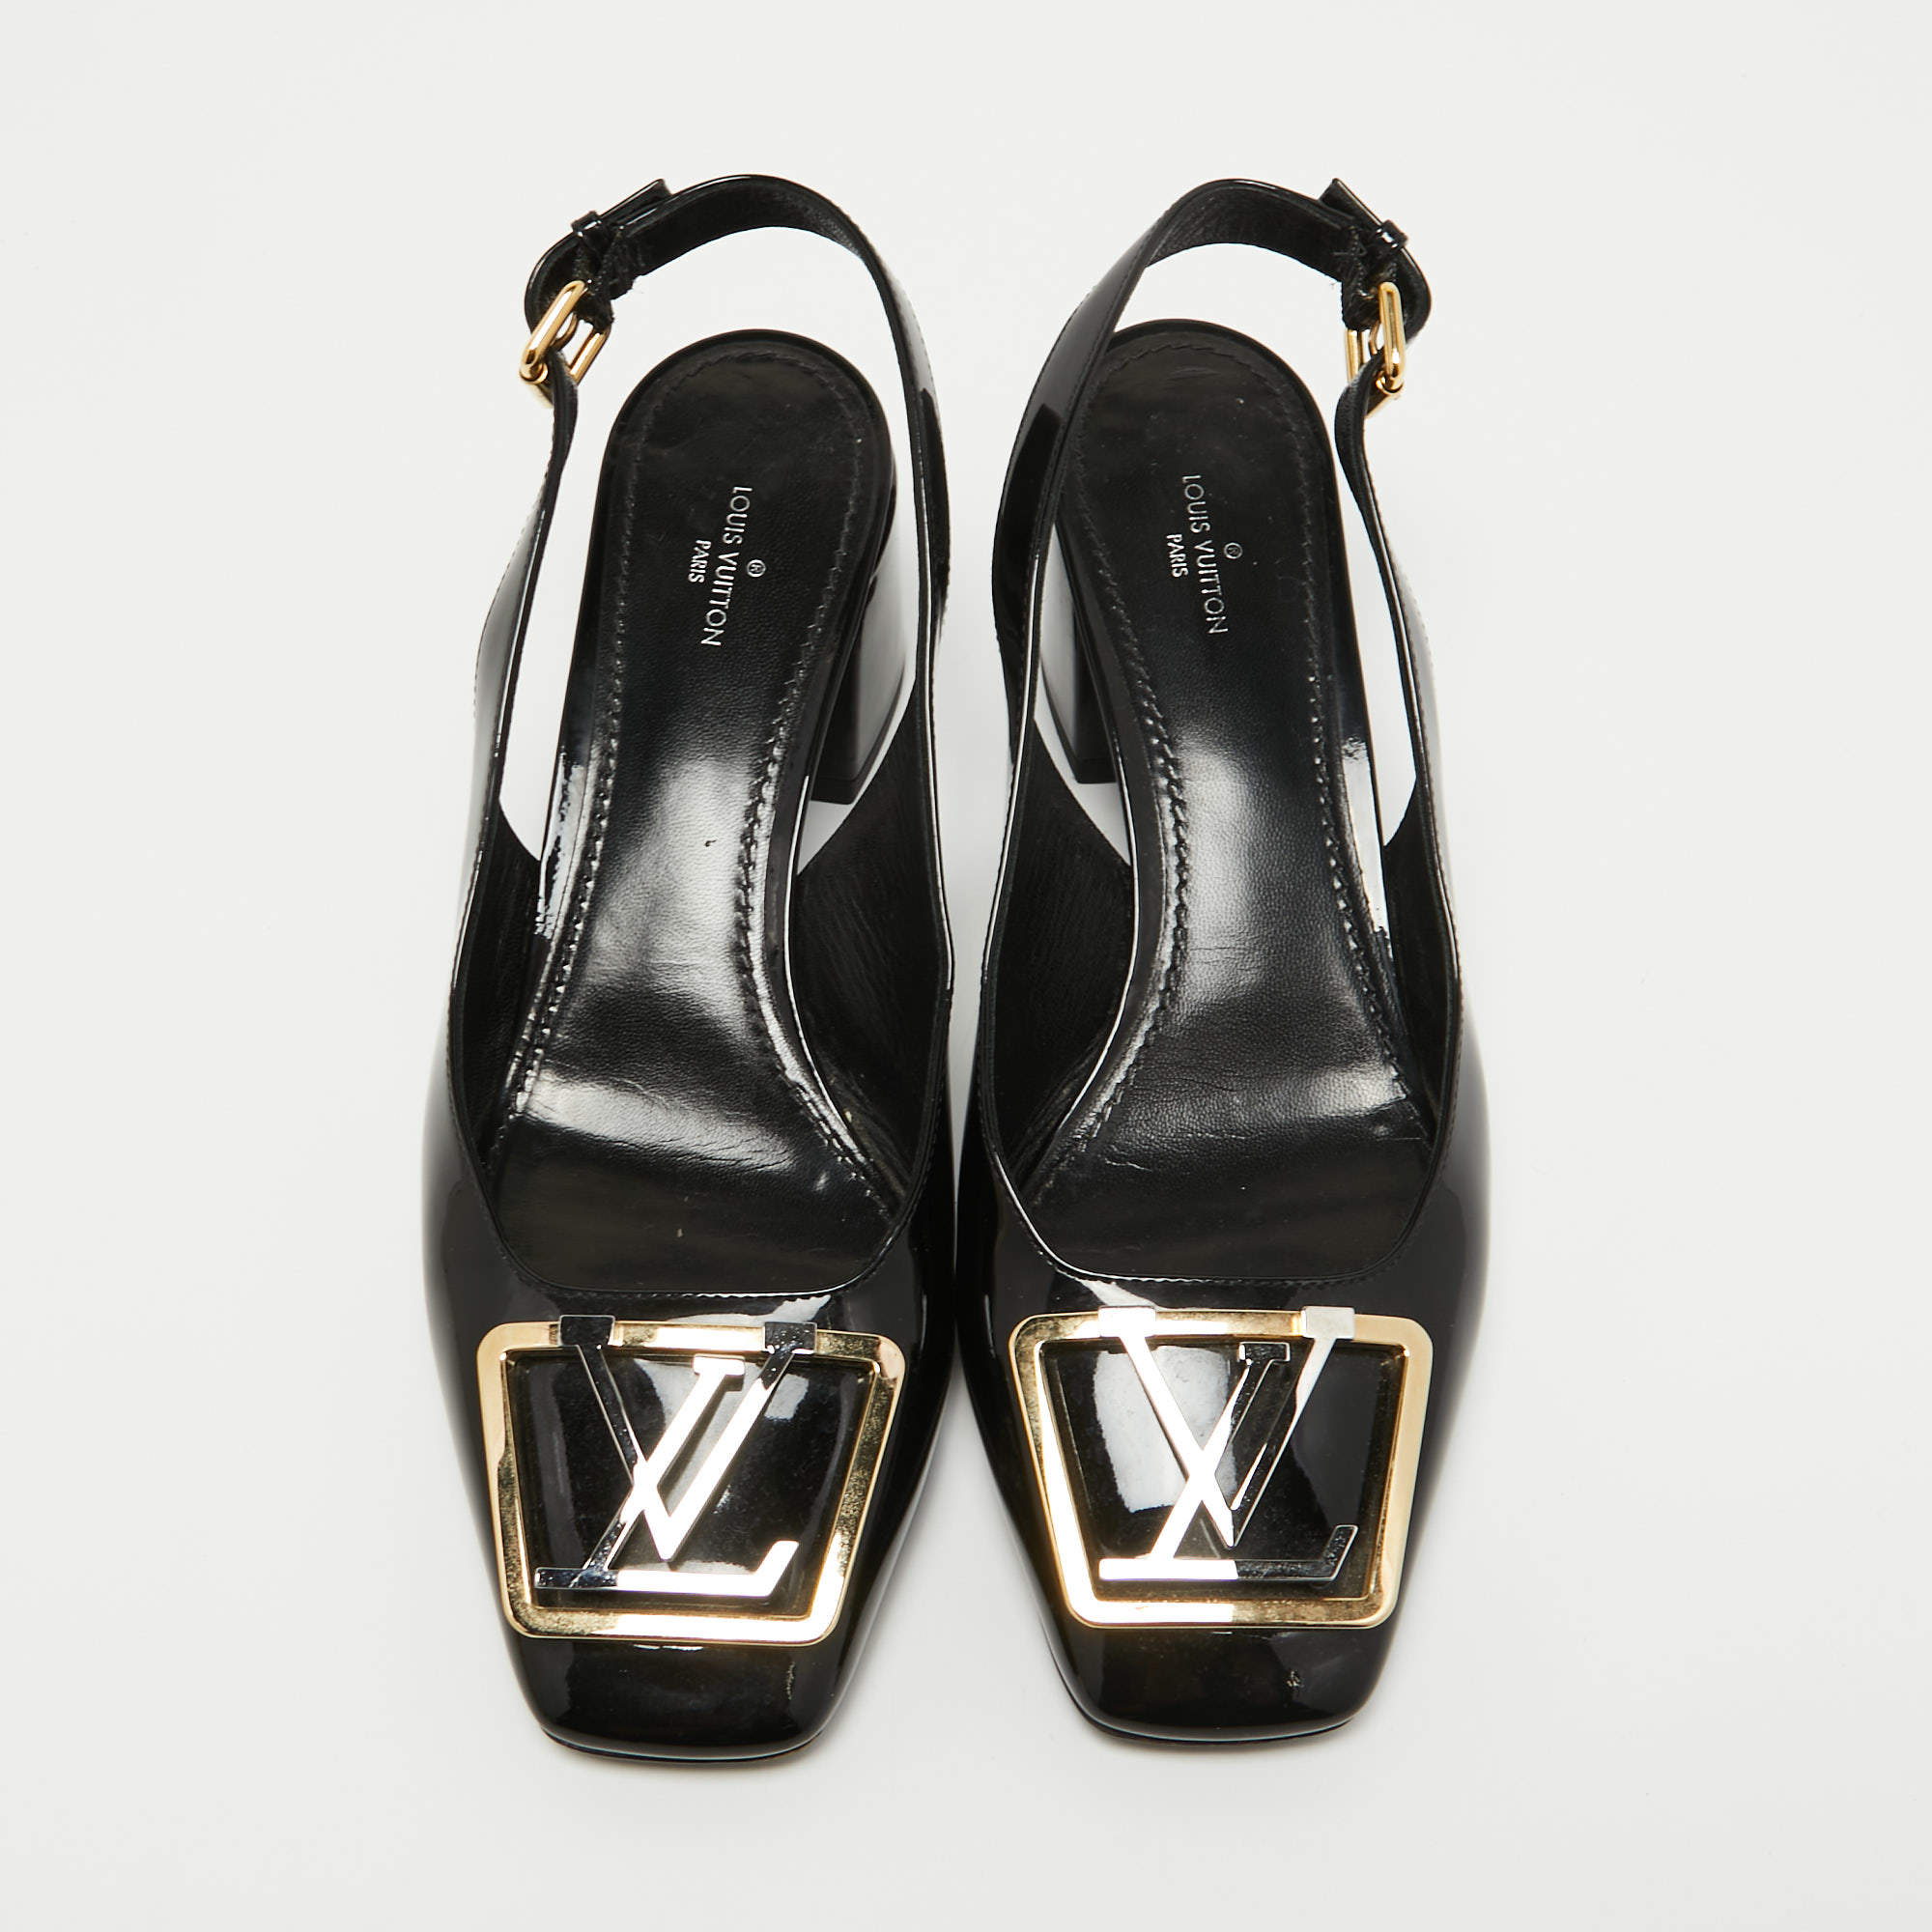 Madeleine heels Louis Vuitton Black size 37 EU in Suede - 34120188